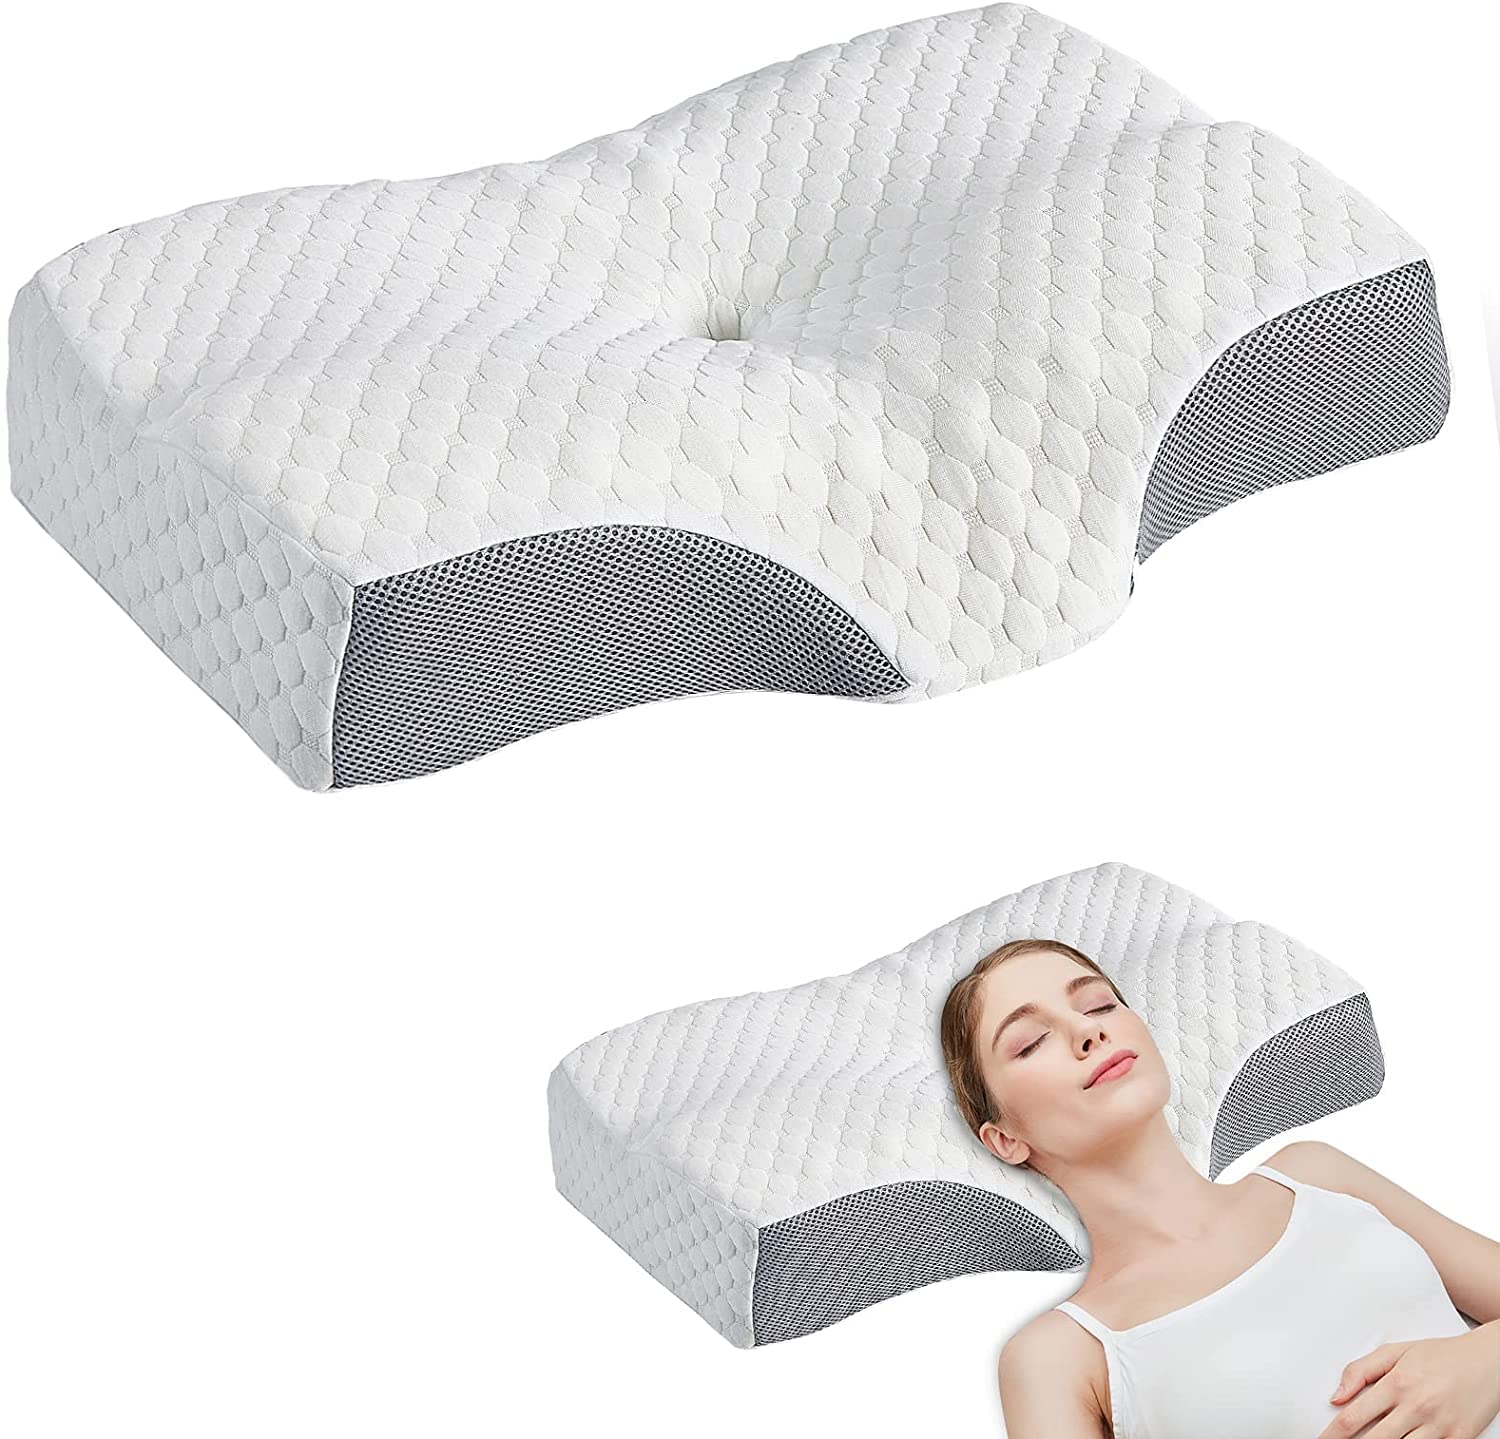 Sigoods Contour Memory Foam Pillows for Sleeping, Ergonomic